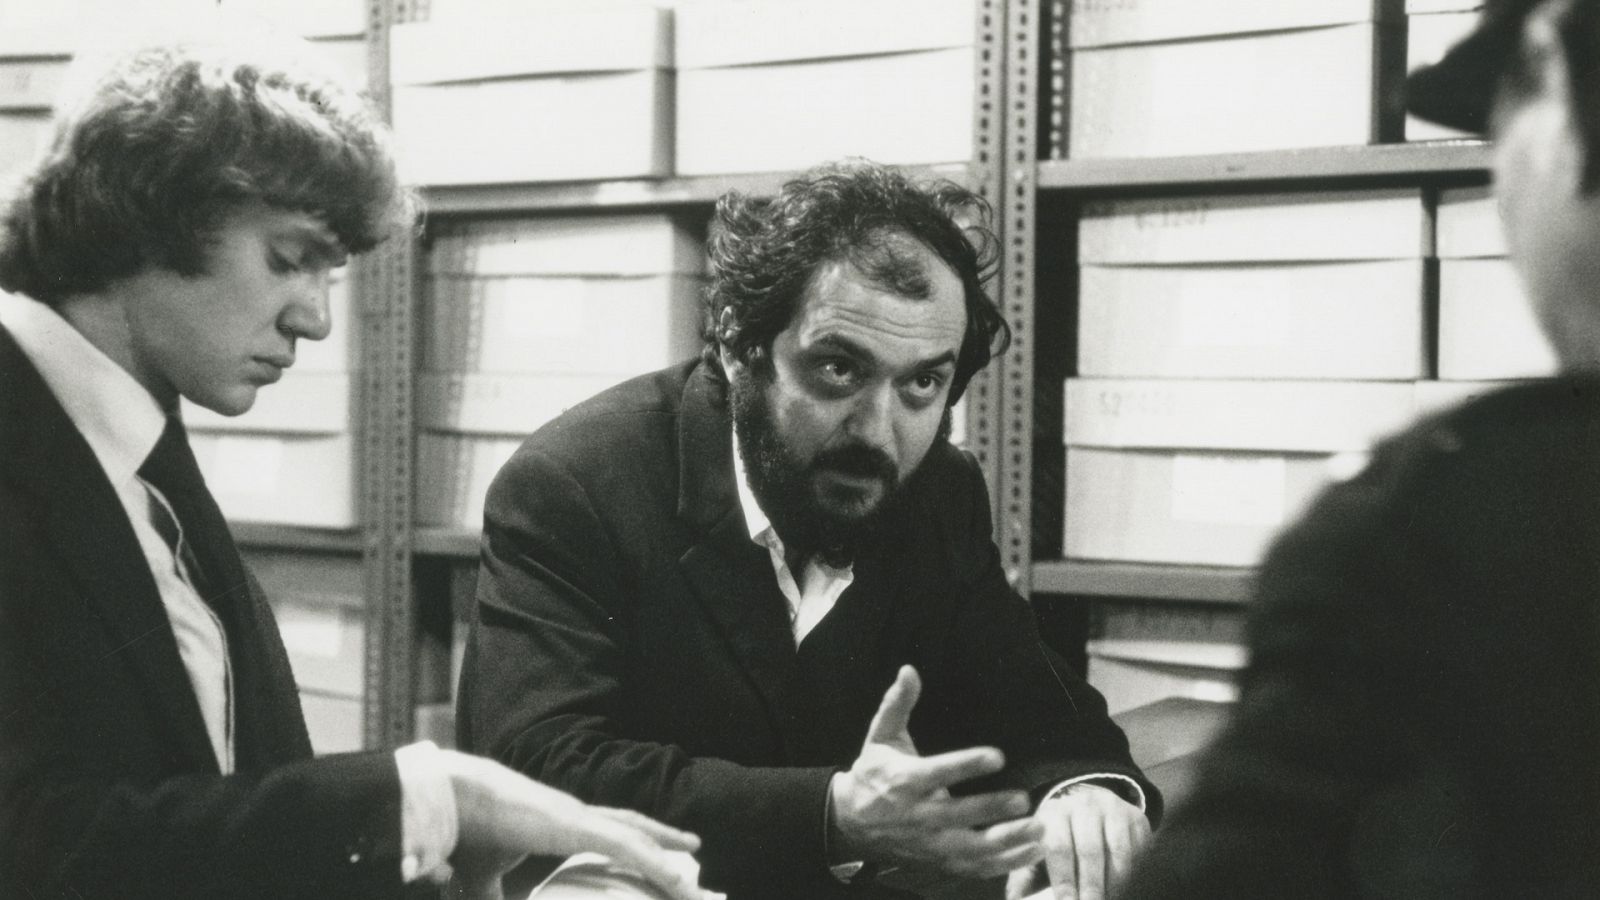 Somos documentales - Kubrick según Kubrick - Documental en RTVE